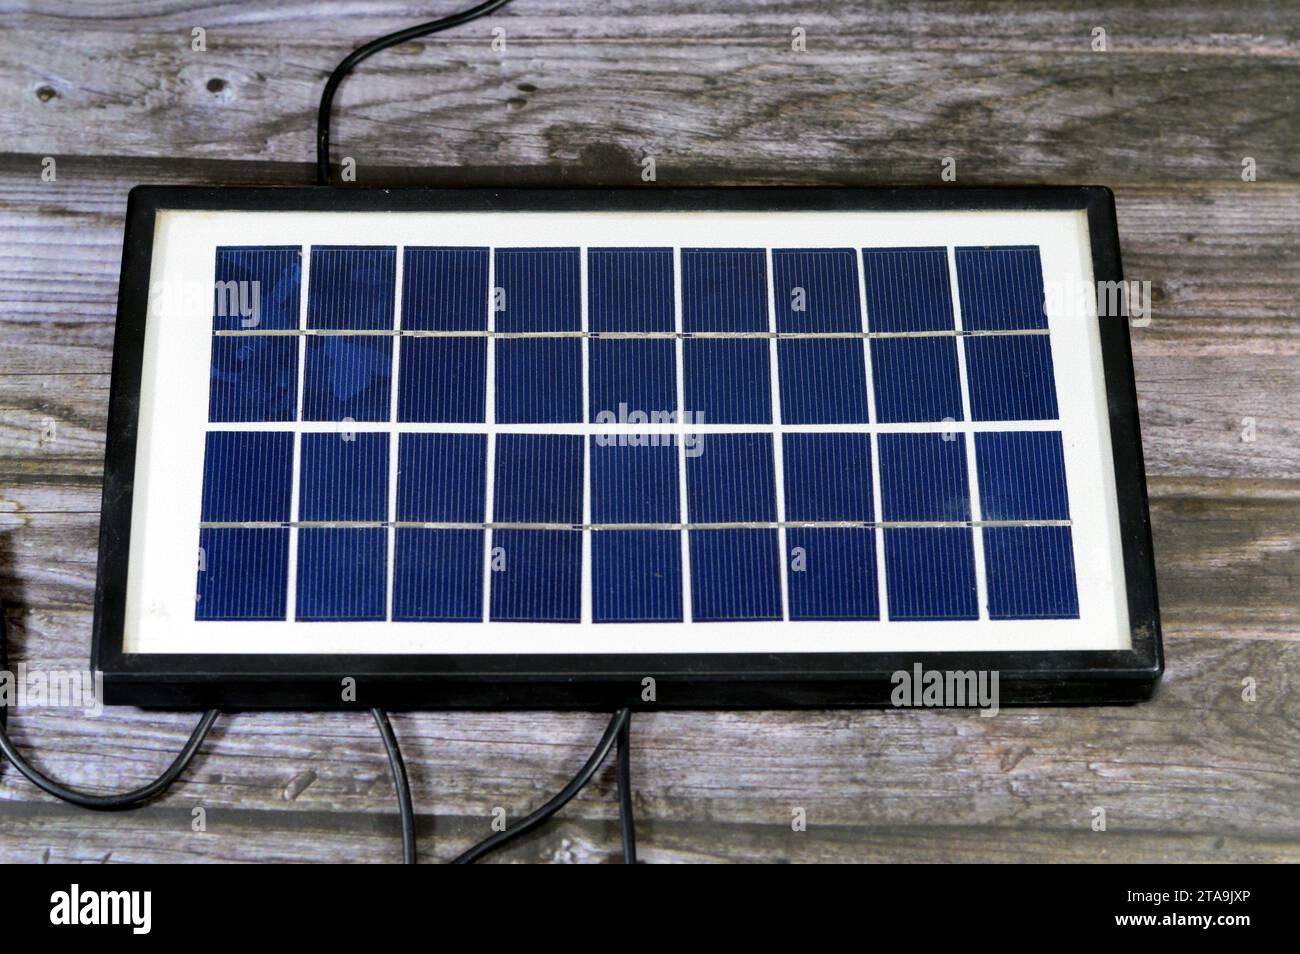 Un pannello solare, un dispositivo che converte la luce solare in elettricità utilizzando celle fotovoltaiche (PV) realizzate con materiali che generano elettroni quando Foto Stock